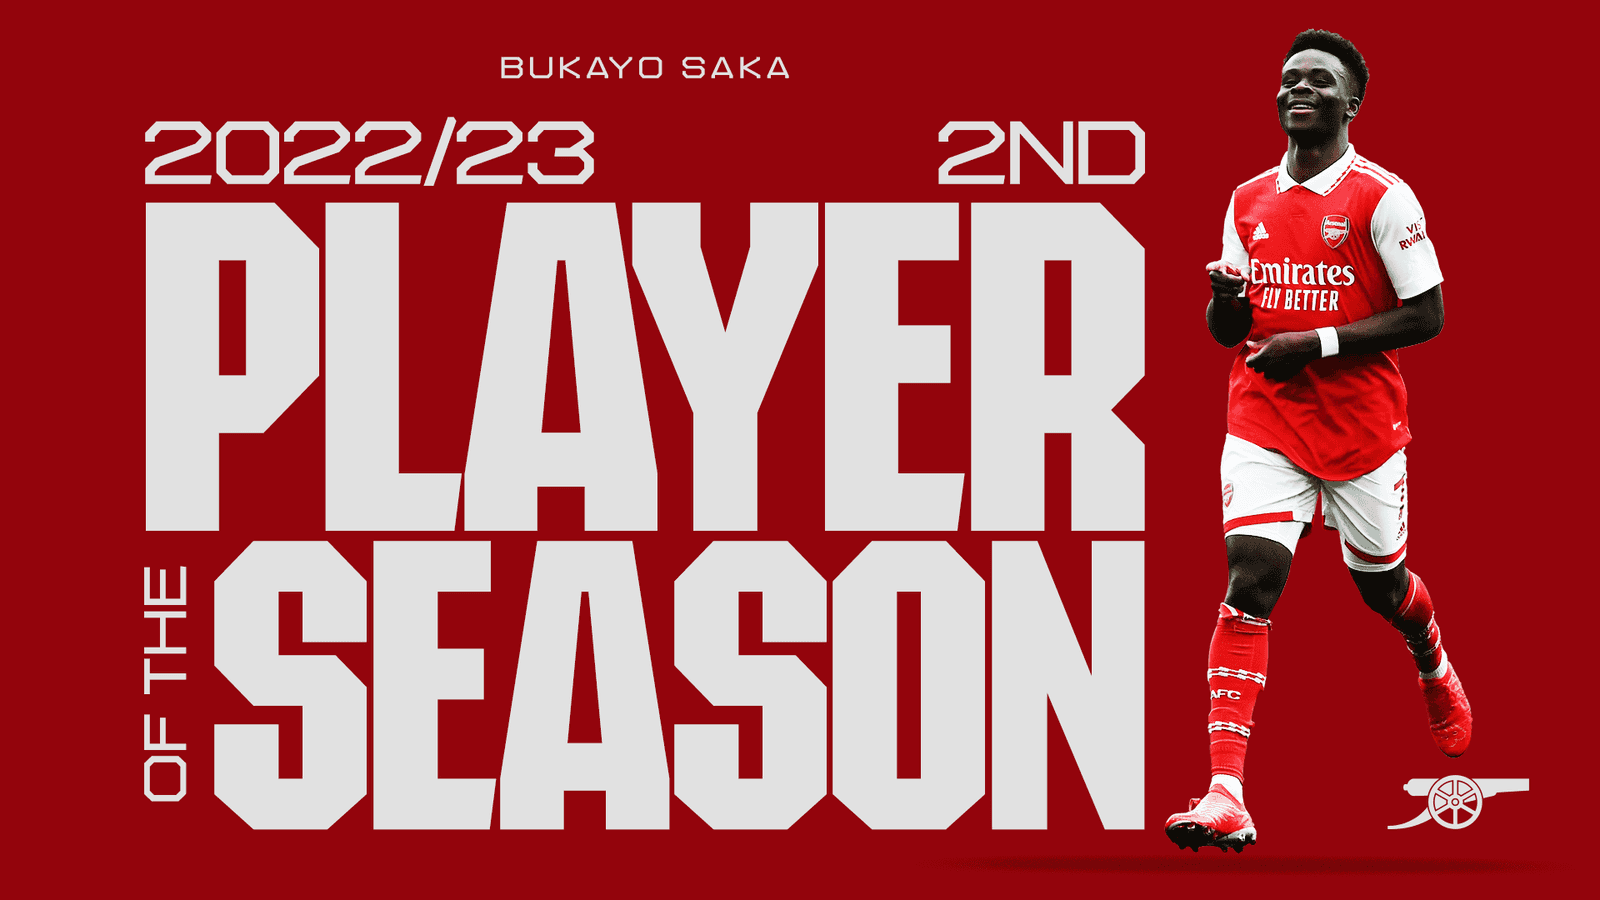 بوکایو ساکا به عنوان دومین بازیکن برتر تیم در فصل ۲۰۲۲/۲۳ انتخاب شد